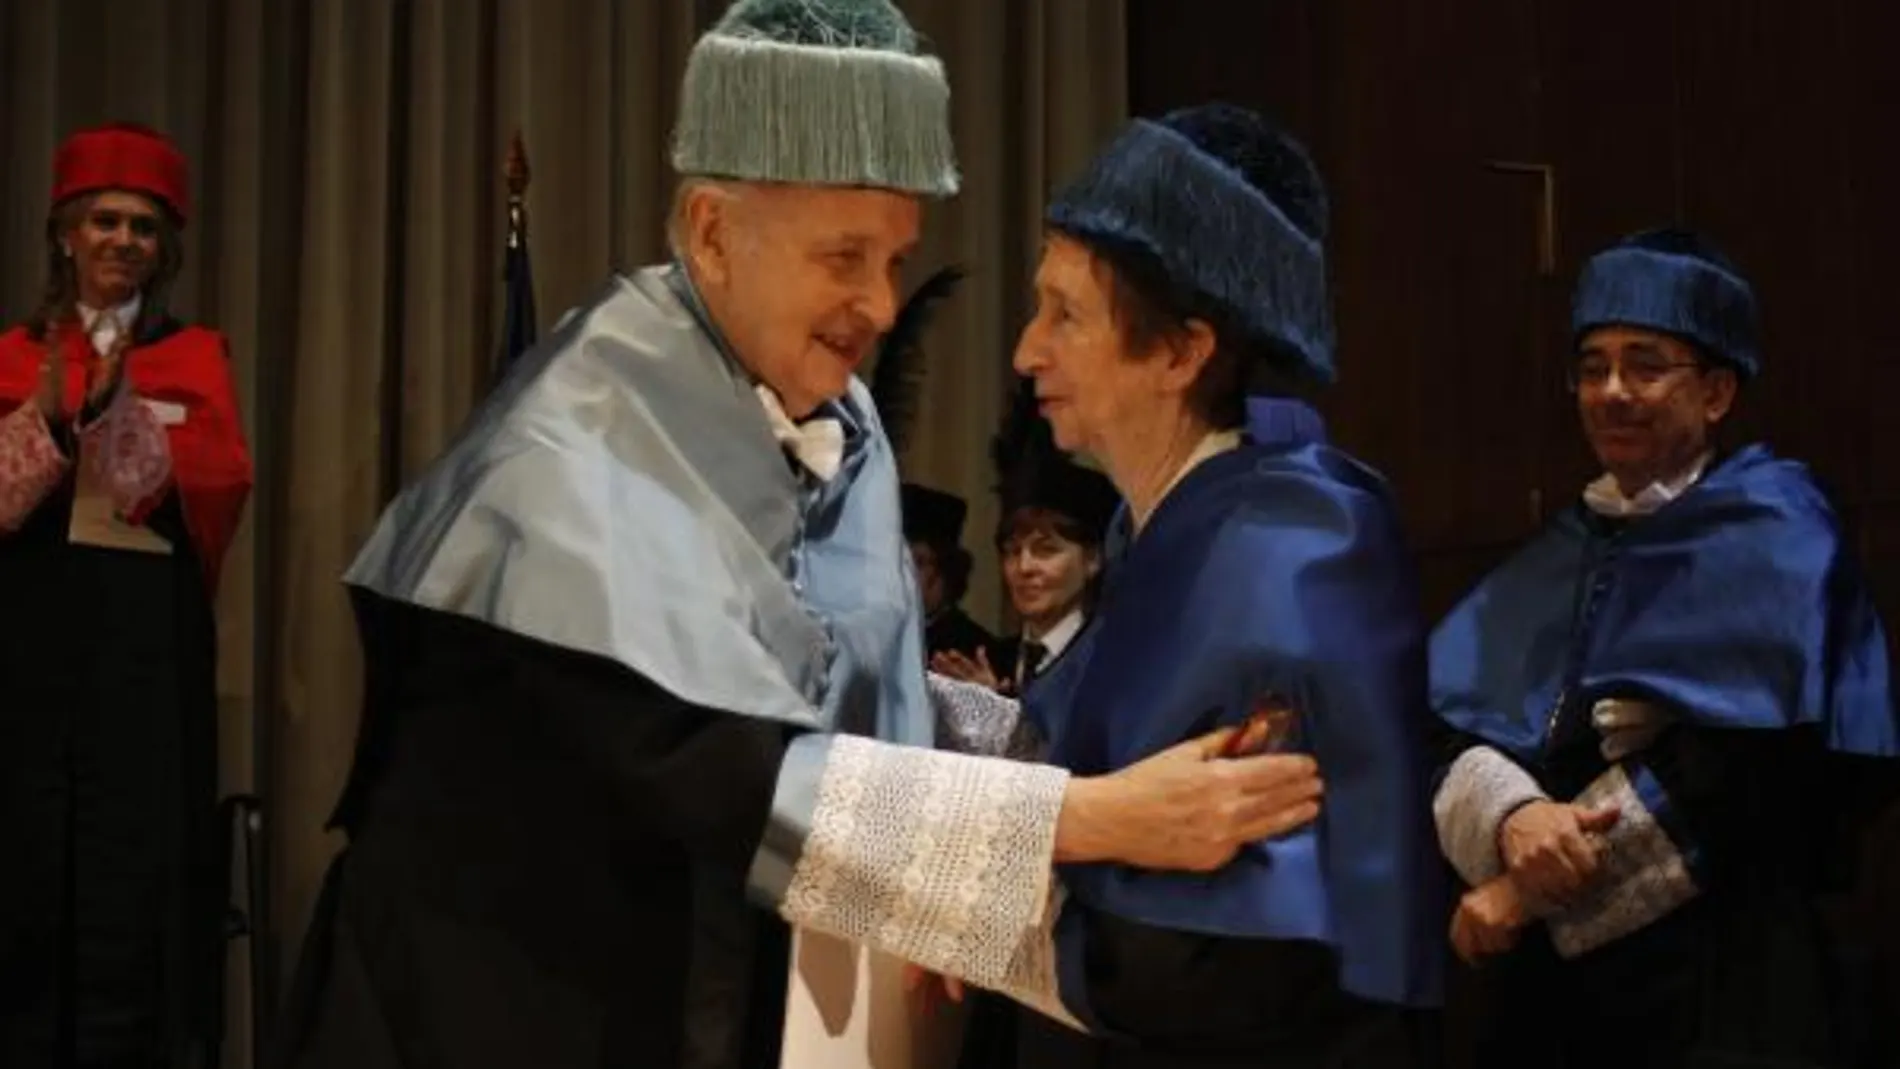 Investidura de doctores honoris causa por la UNED a Margarita Salas y Santiago Grisolía el 15 de abril de 2011